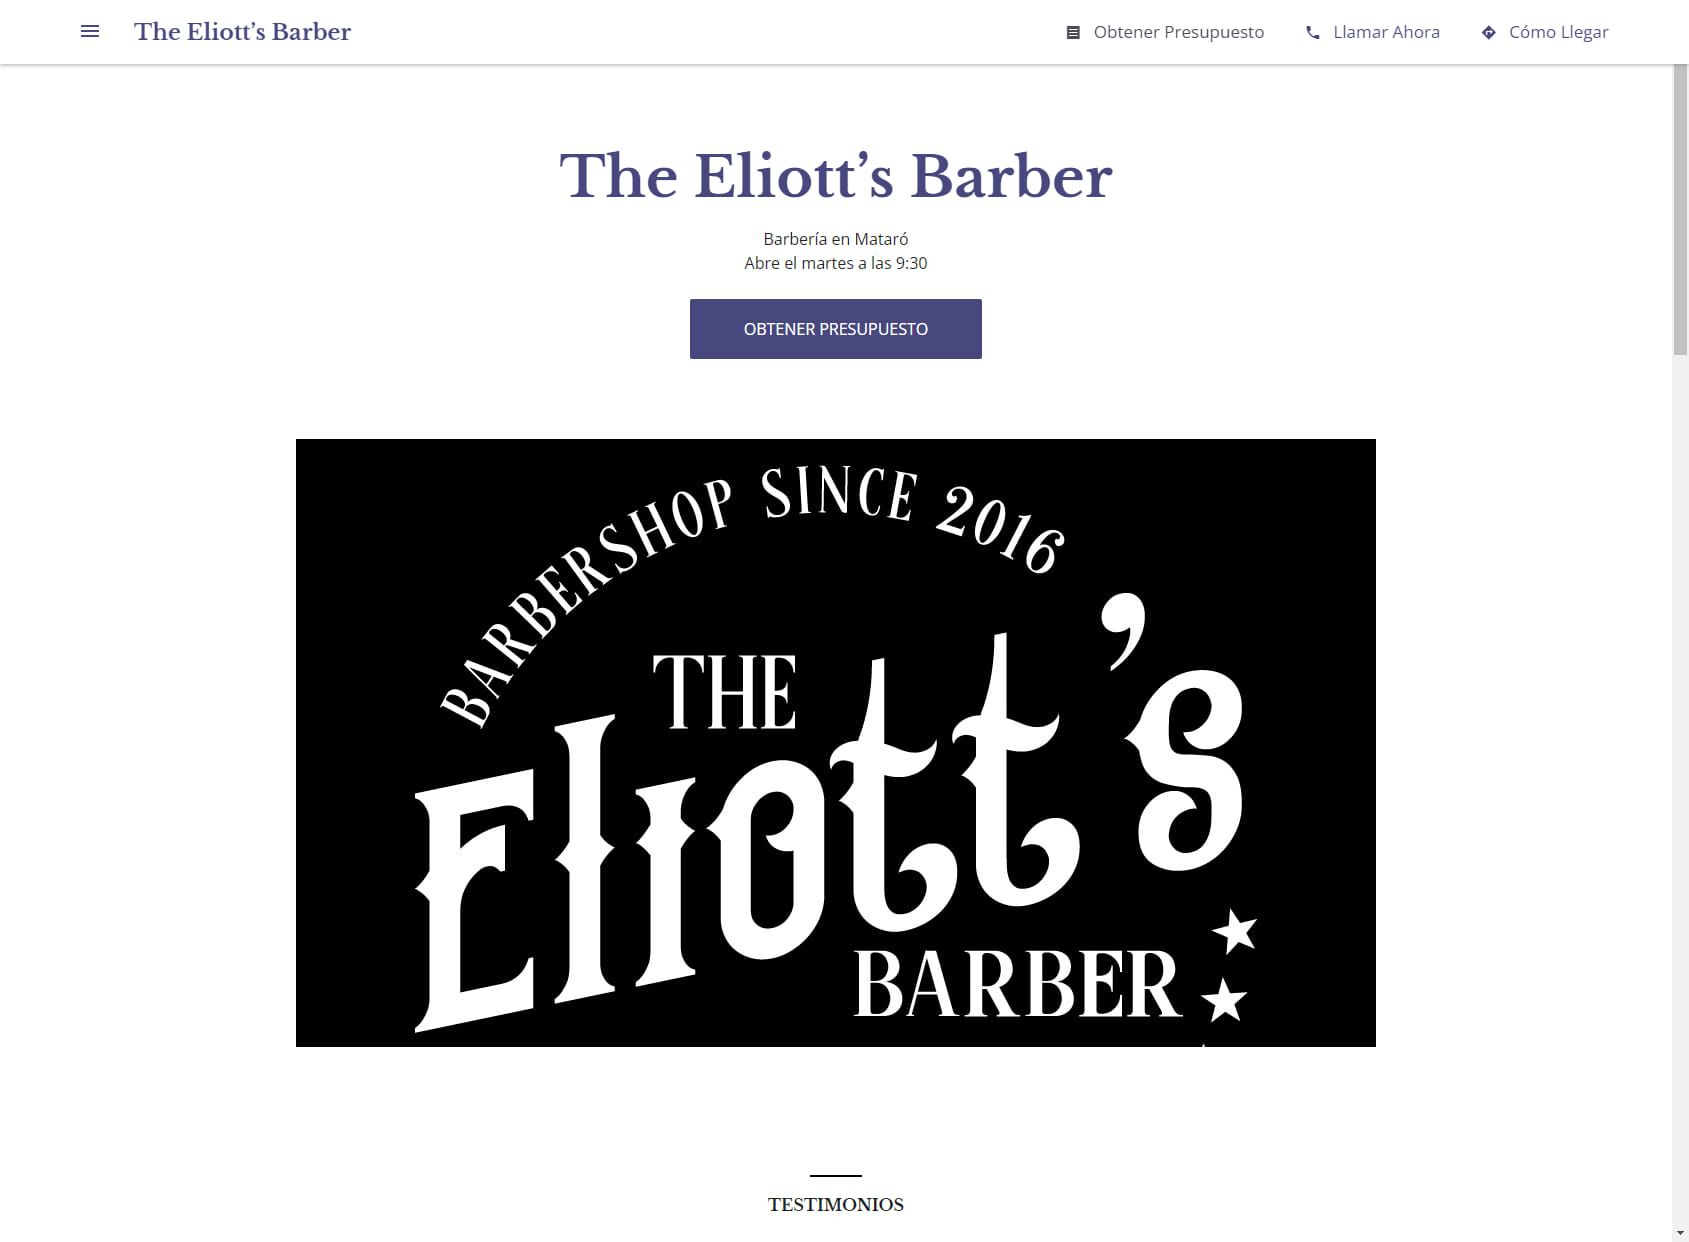 The Eliott’s Barber